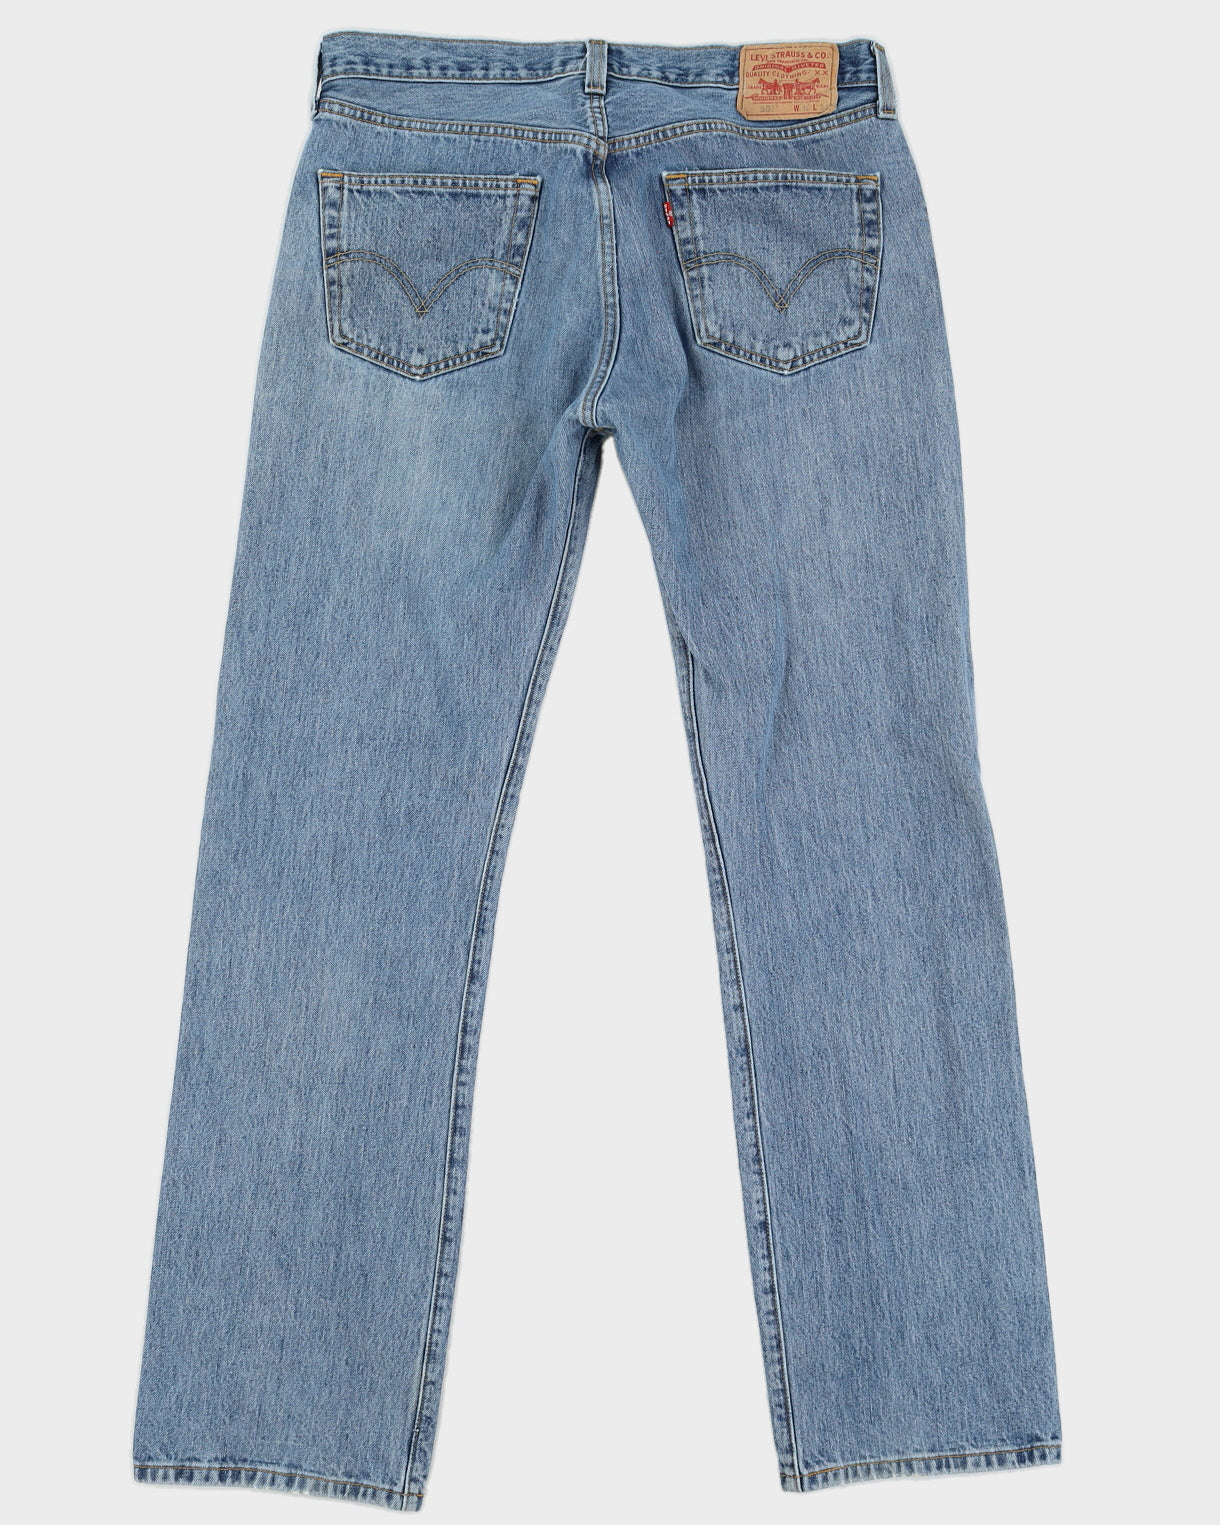 Vintage 90s Levi's Medium Wash Blue Jeans - W36 L34